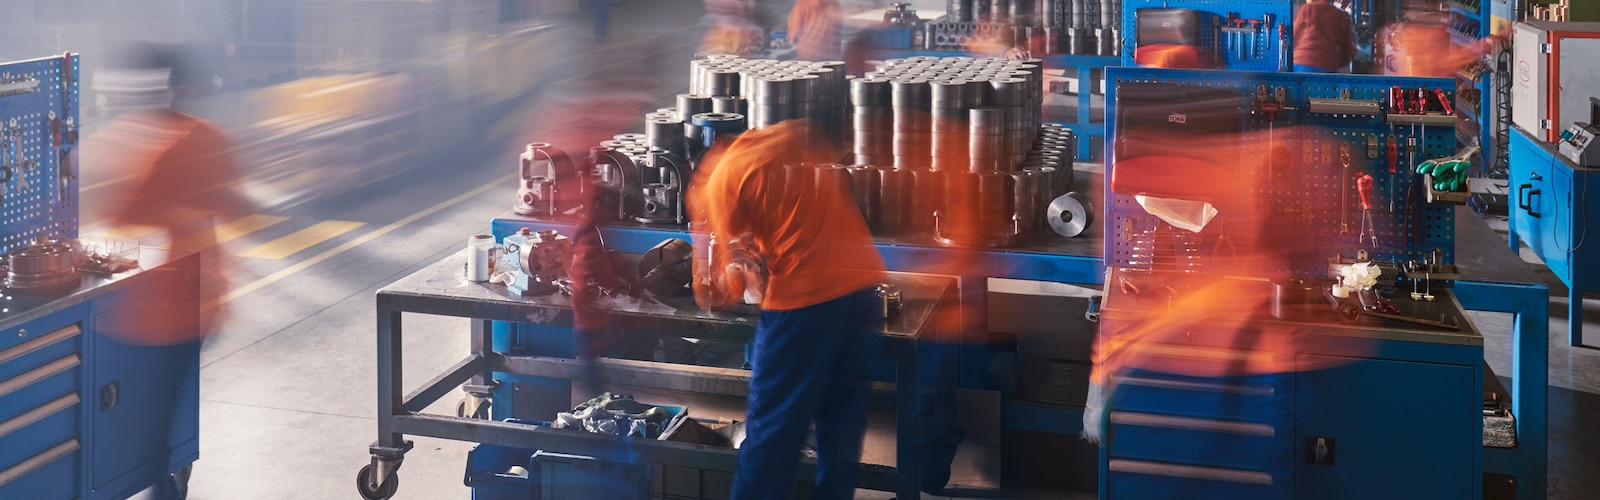 Tork, une image en surimpression montre des ouvriers d’usine dans un environnement industriel animé